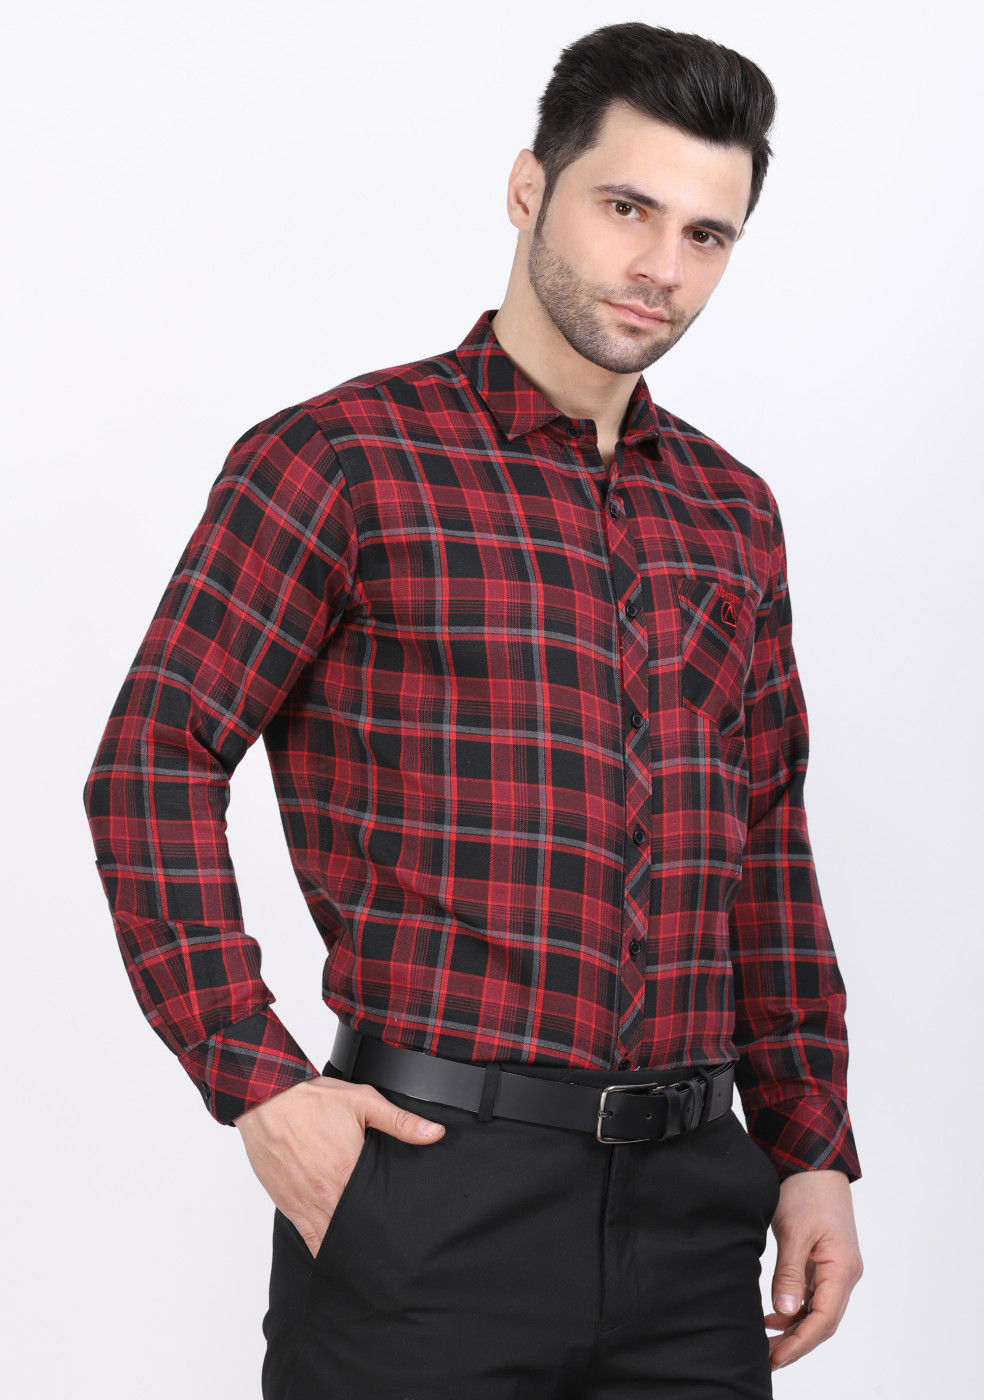 ASHTOM PC Red Check Shirt For Men